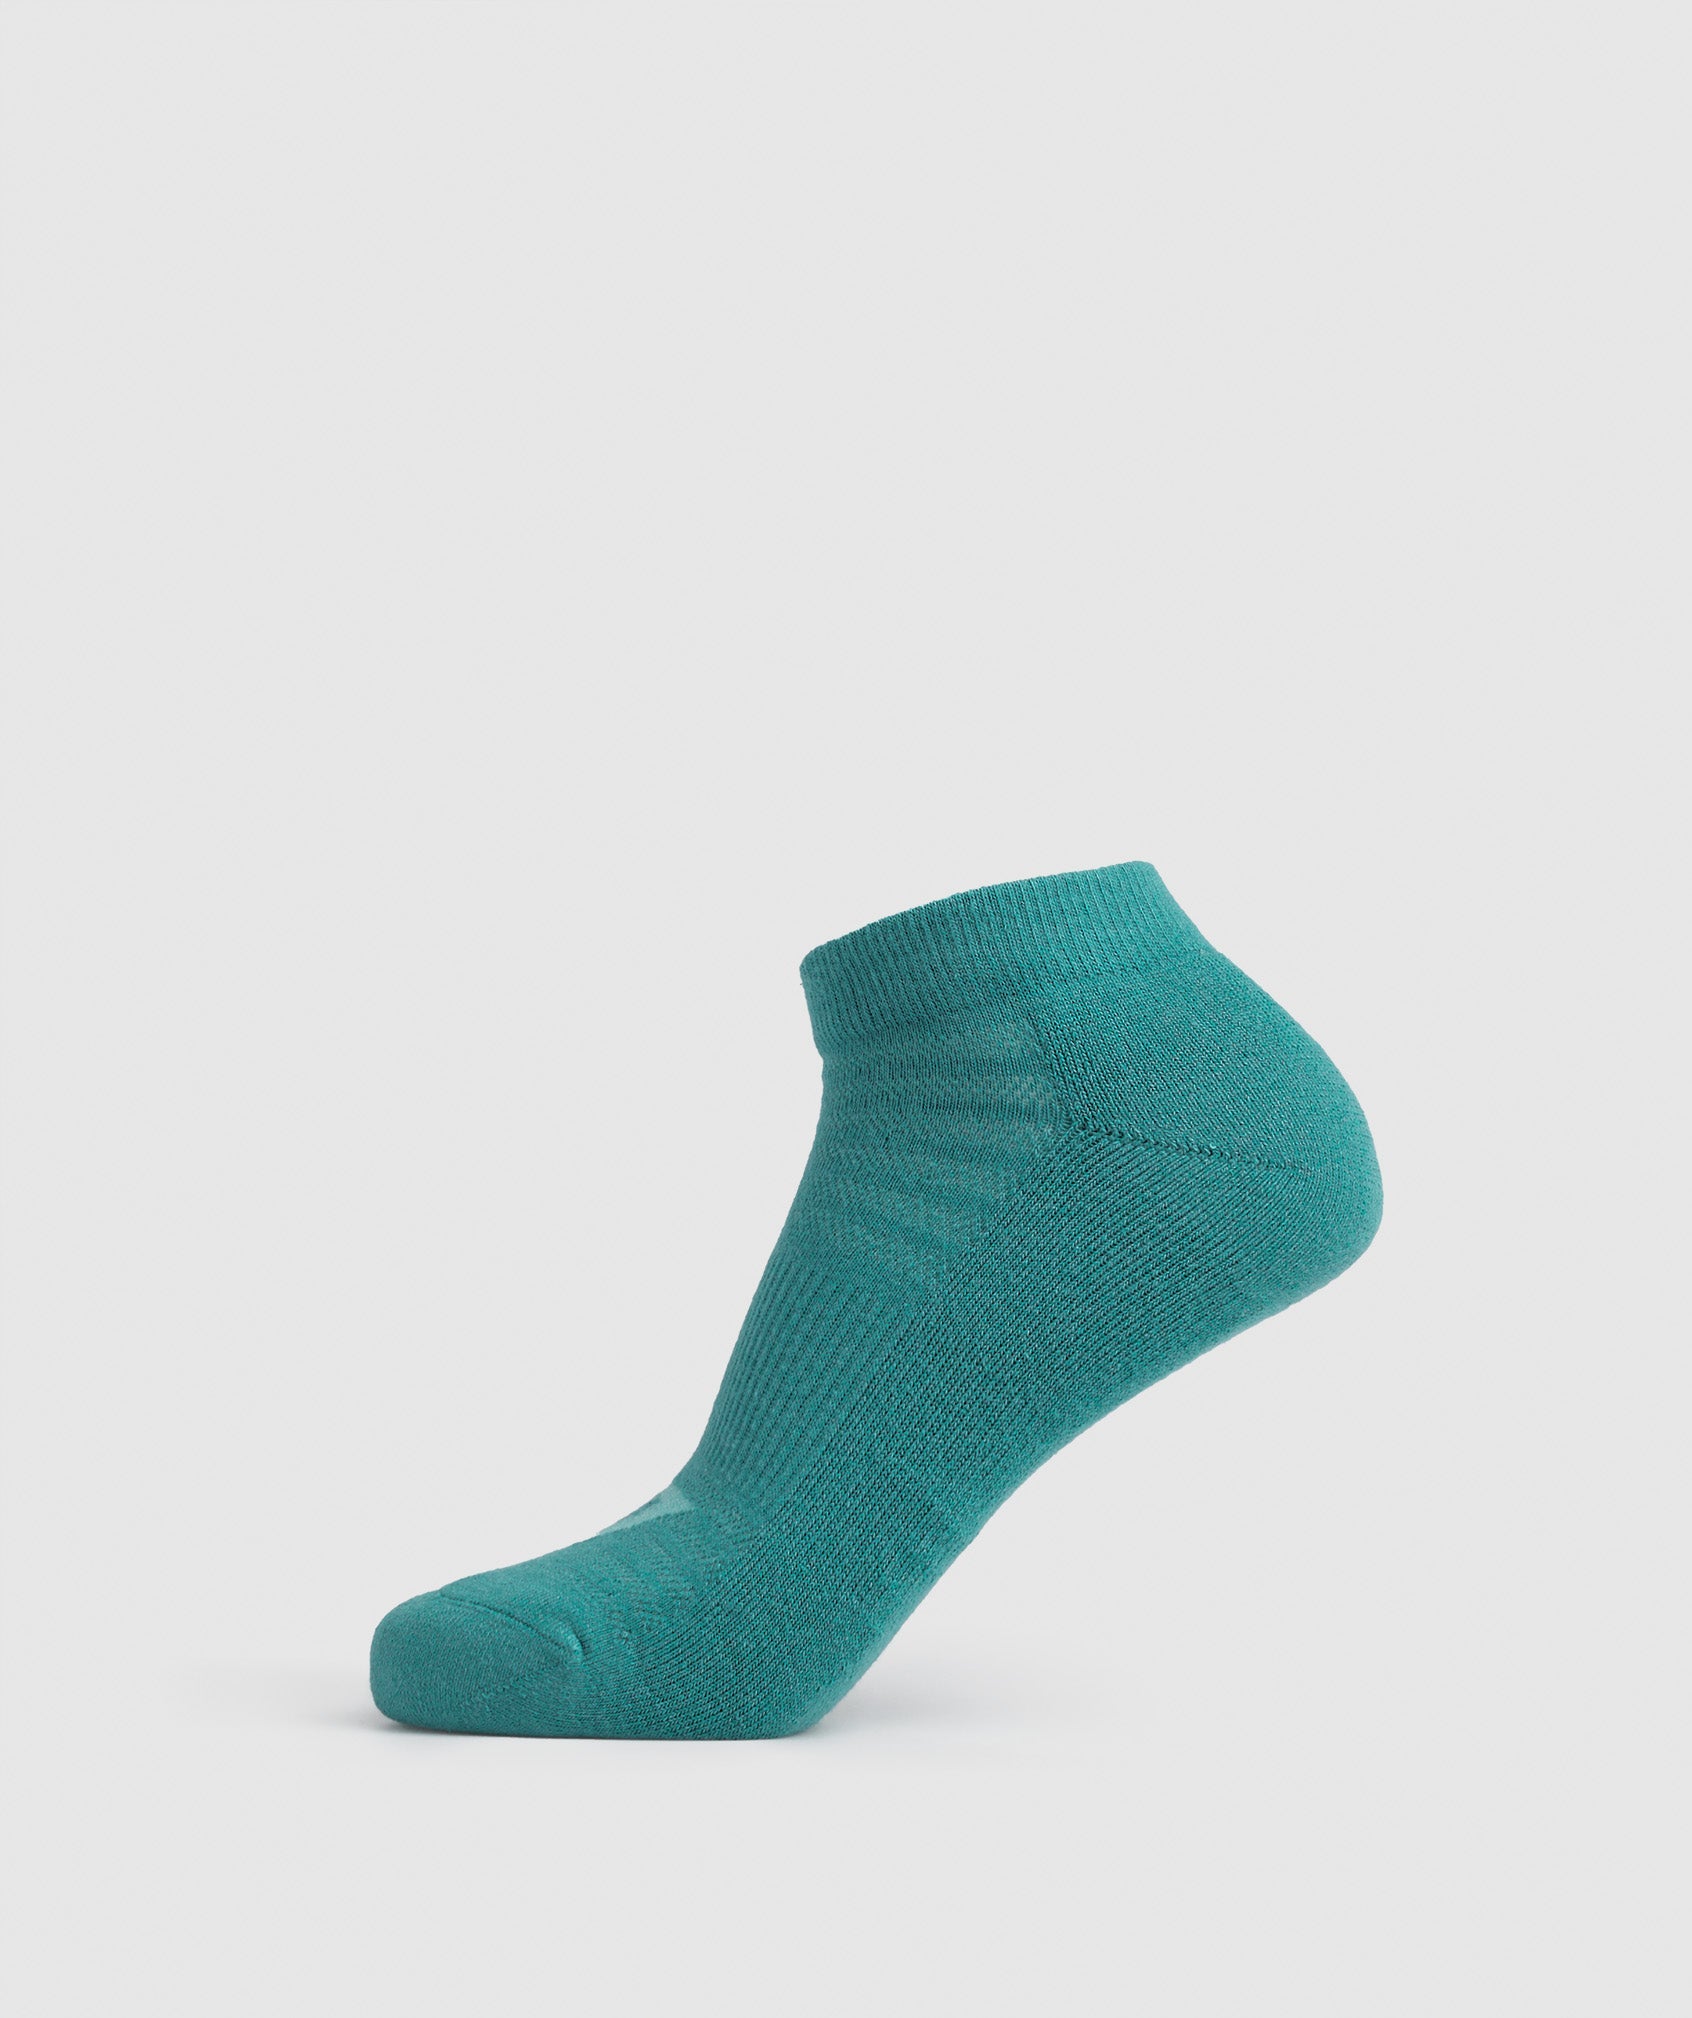 Ankle Socks 3pk in Blue/Jewel Green/Pebble Grey